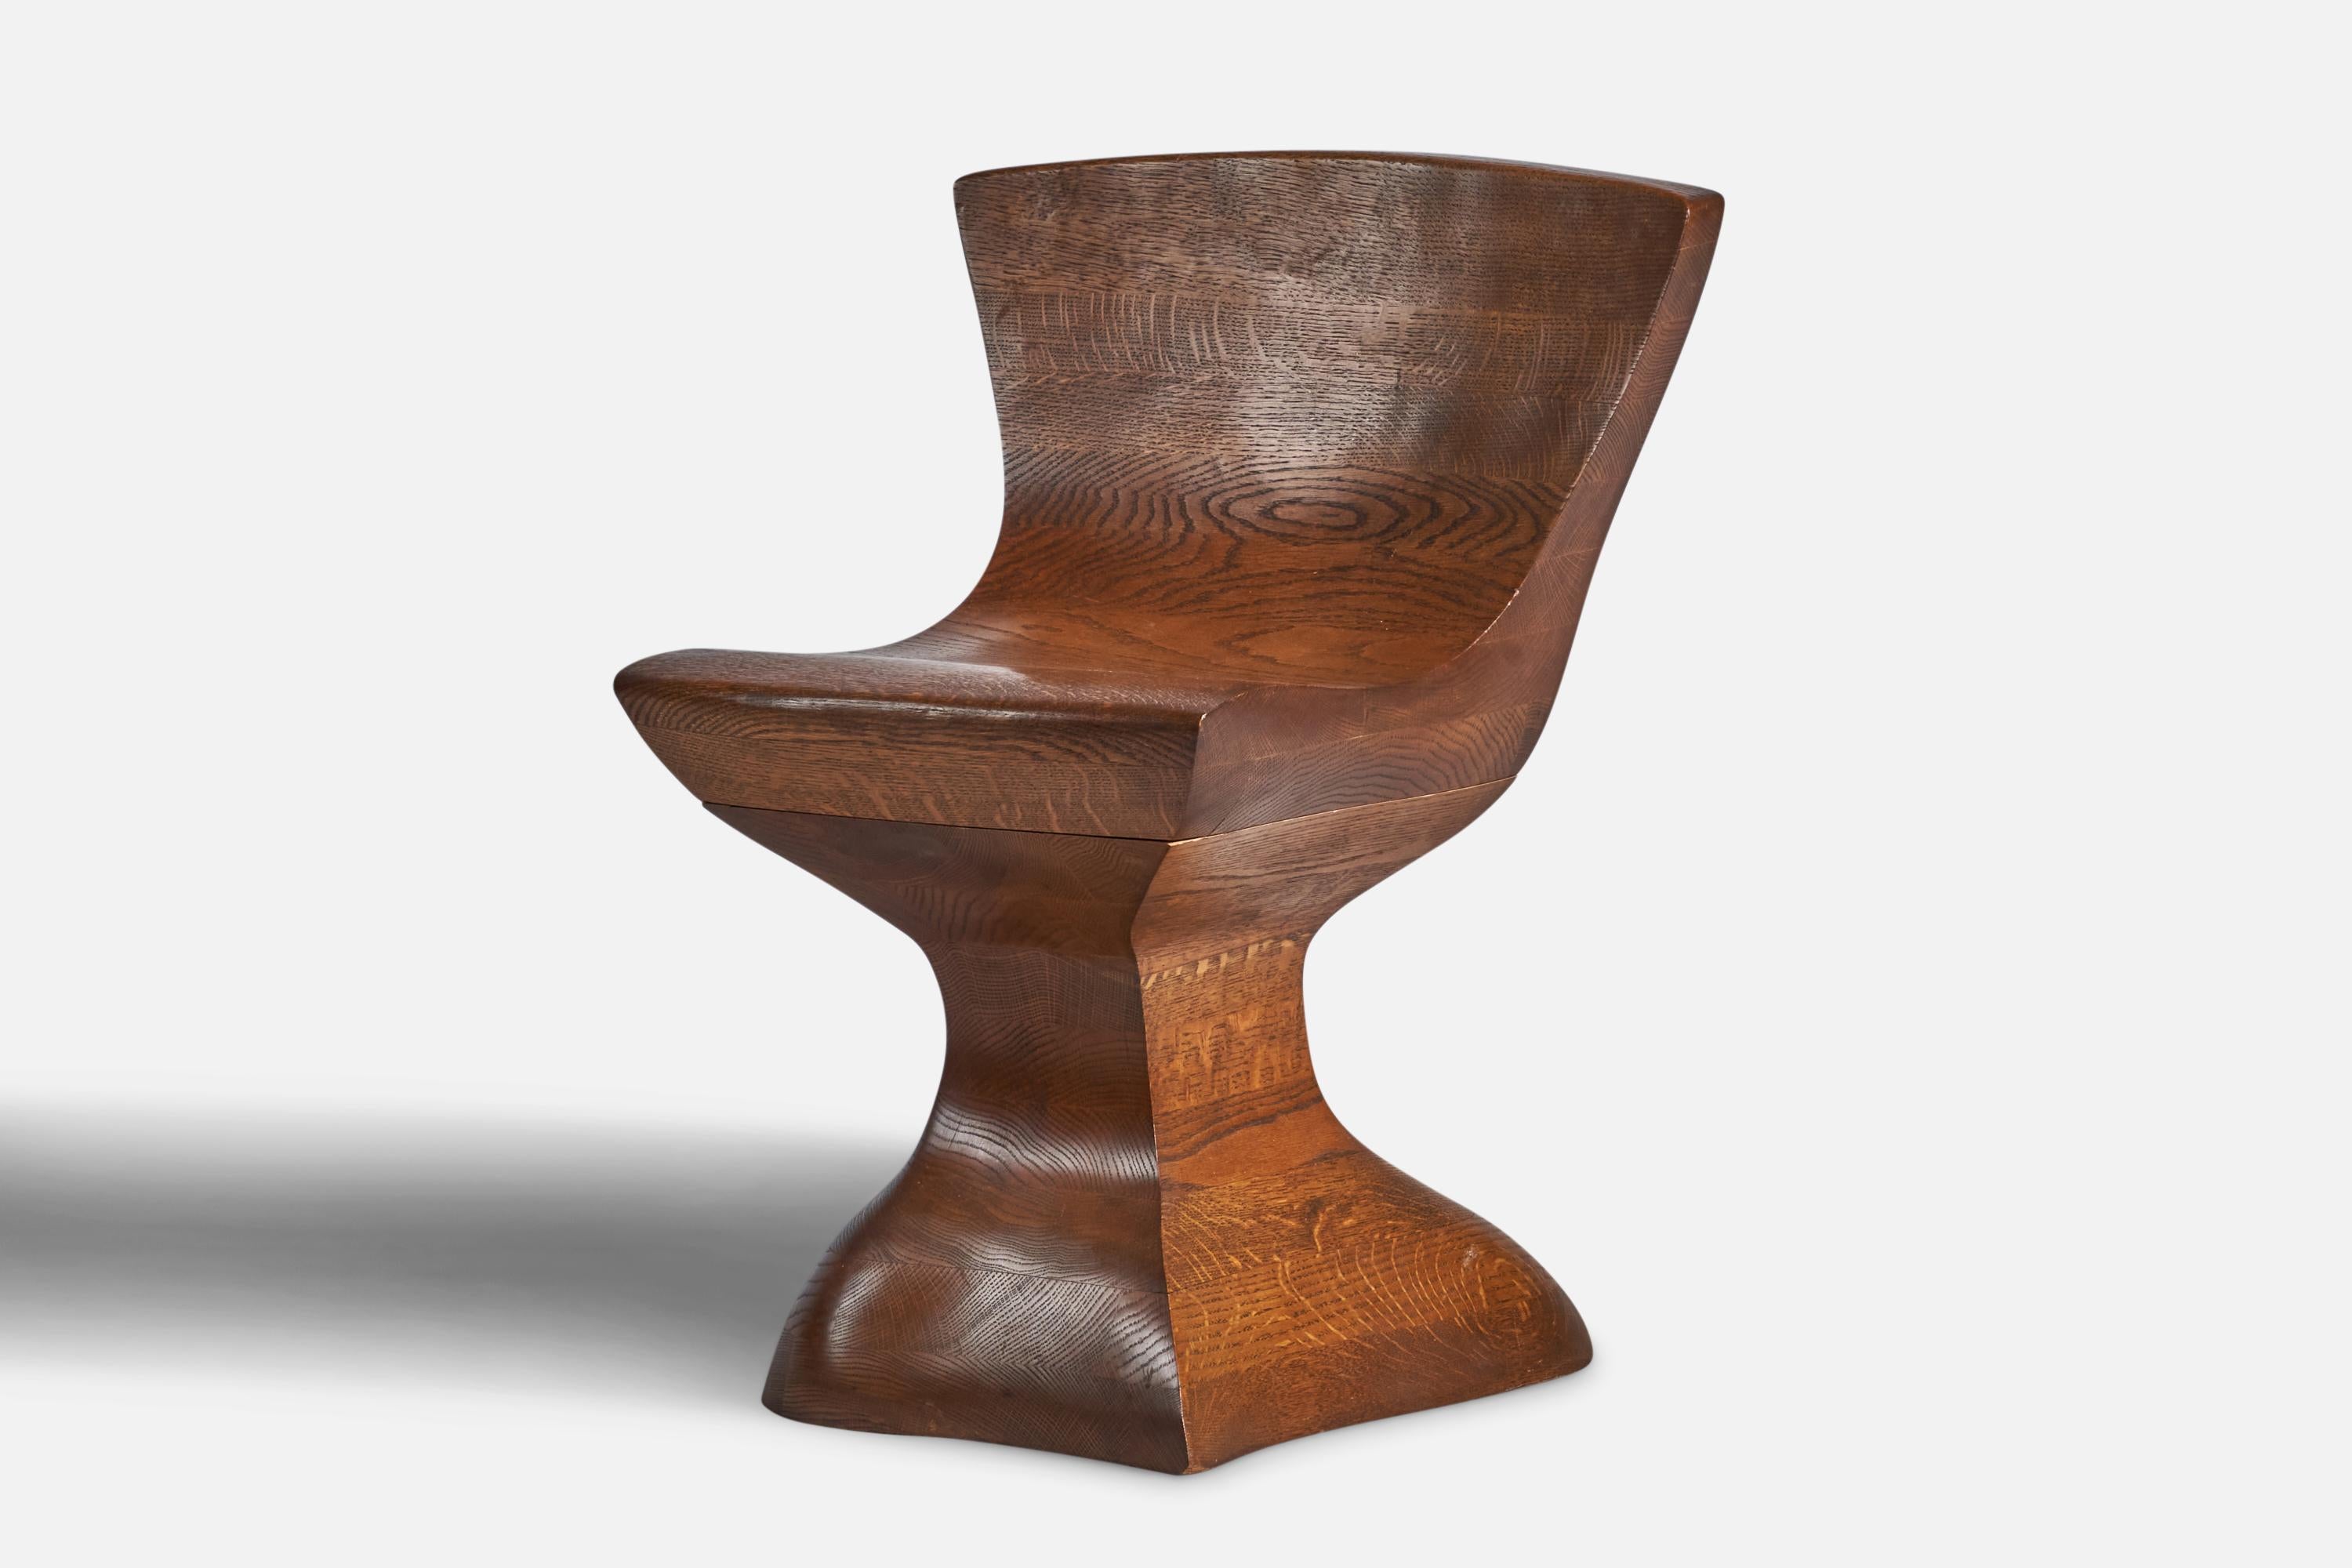 Ein Beistellstuhl aus laminierter und geschnitzter Eiche, entworfen und hergestellt in den USA, ca. 1980er Jahre.
16,75